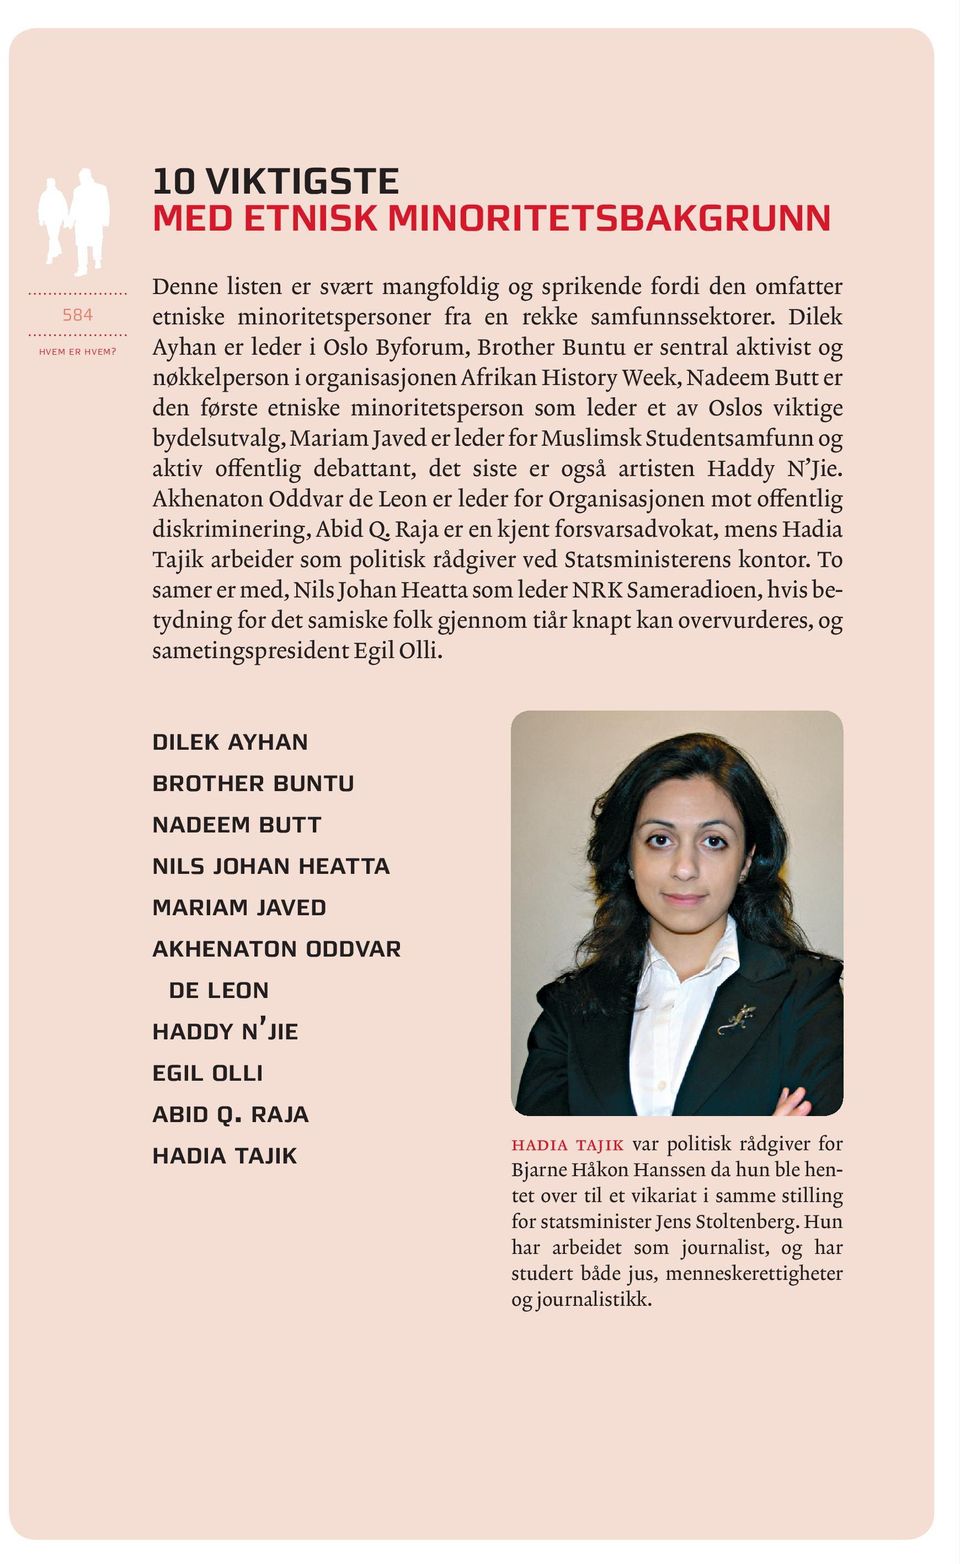 Oslos viktige bydels utvalg, Mariam Javed er leder for Muslimsk Studentsamfunn og aktiv offentlig debattant, det siste er også artisten Haddy N Jie.